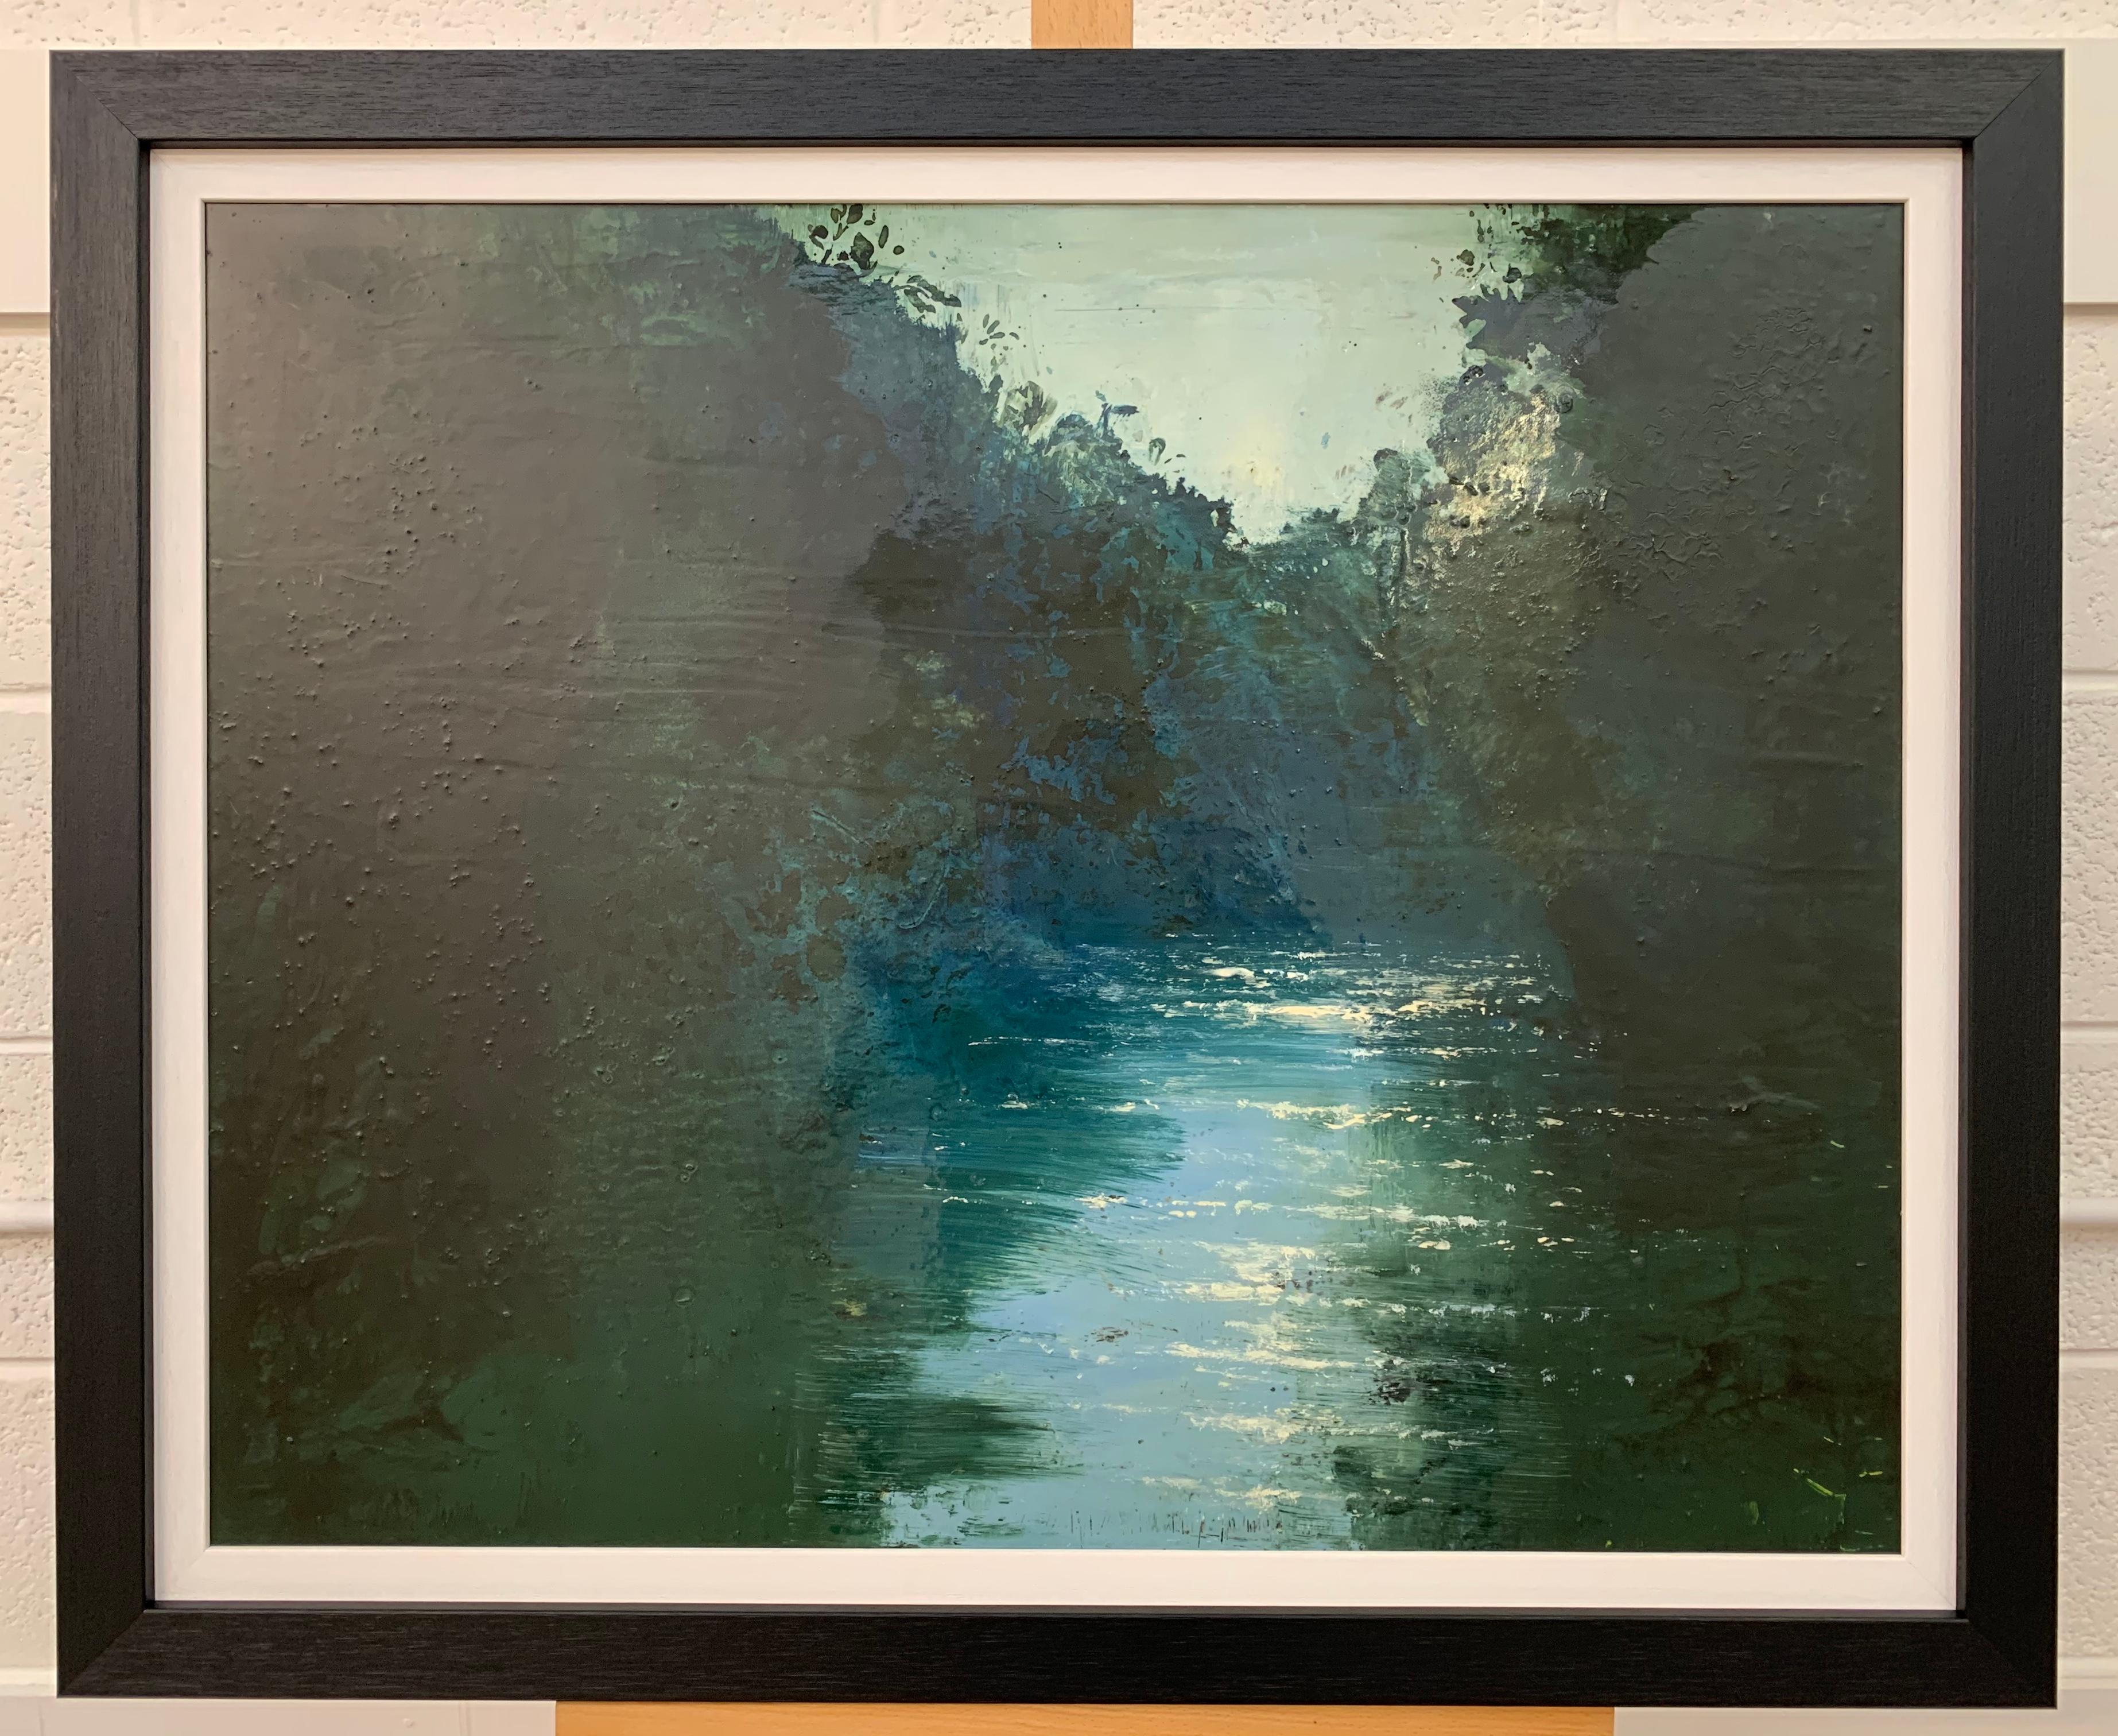 Impressionistische englische Flusslandschaft Original Ölgemälde von britischem Künstler. Ein stark lackiertes Kunstwerk in Mischtechnik auf tiefgezogener Leinwand, das die schimmernden Reflexe des Sonnenlichts auf der Wasseroberfläche einfängt. Eine